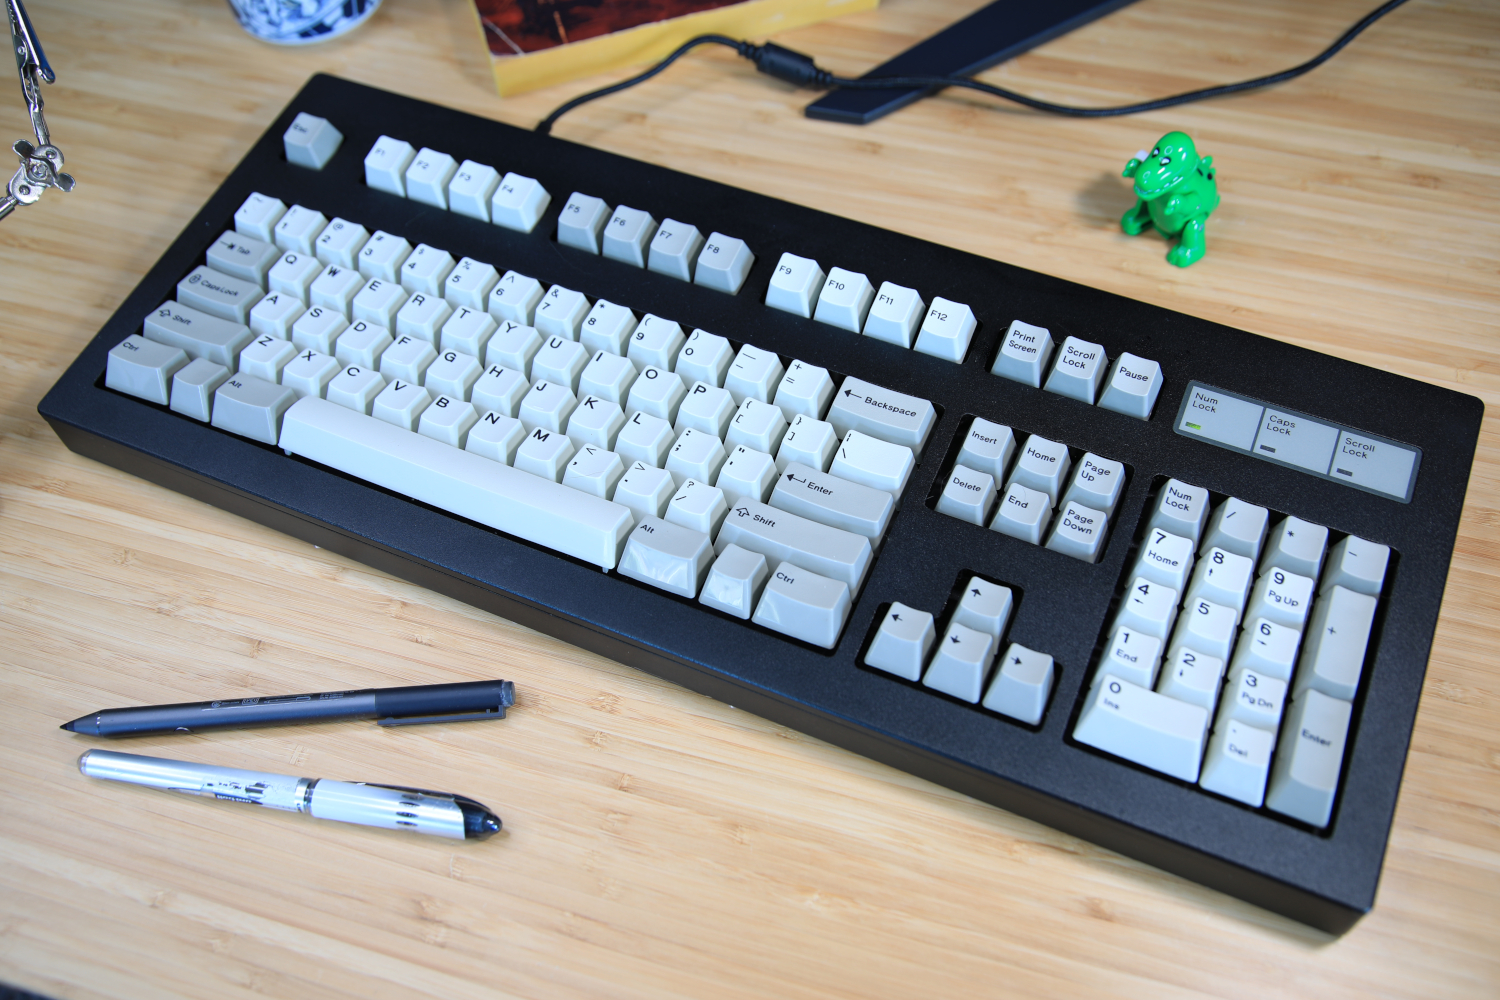 Model F Ultra Compact - Best old-school mechanical keyboard 